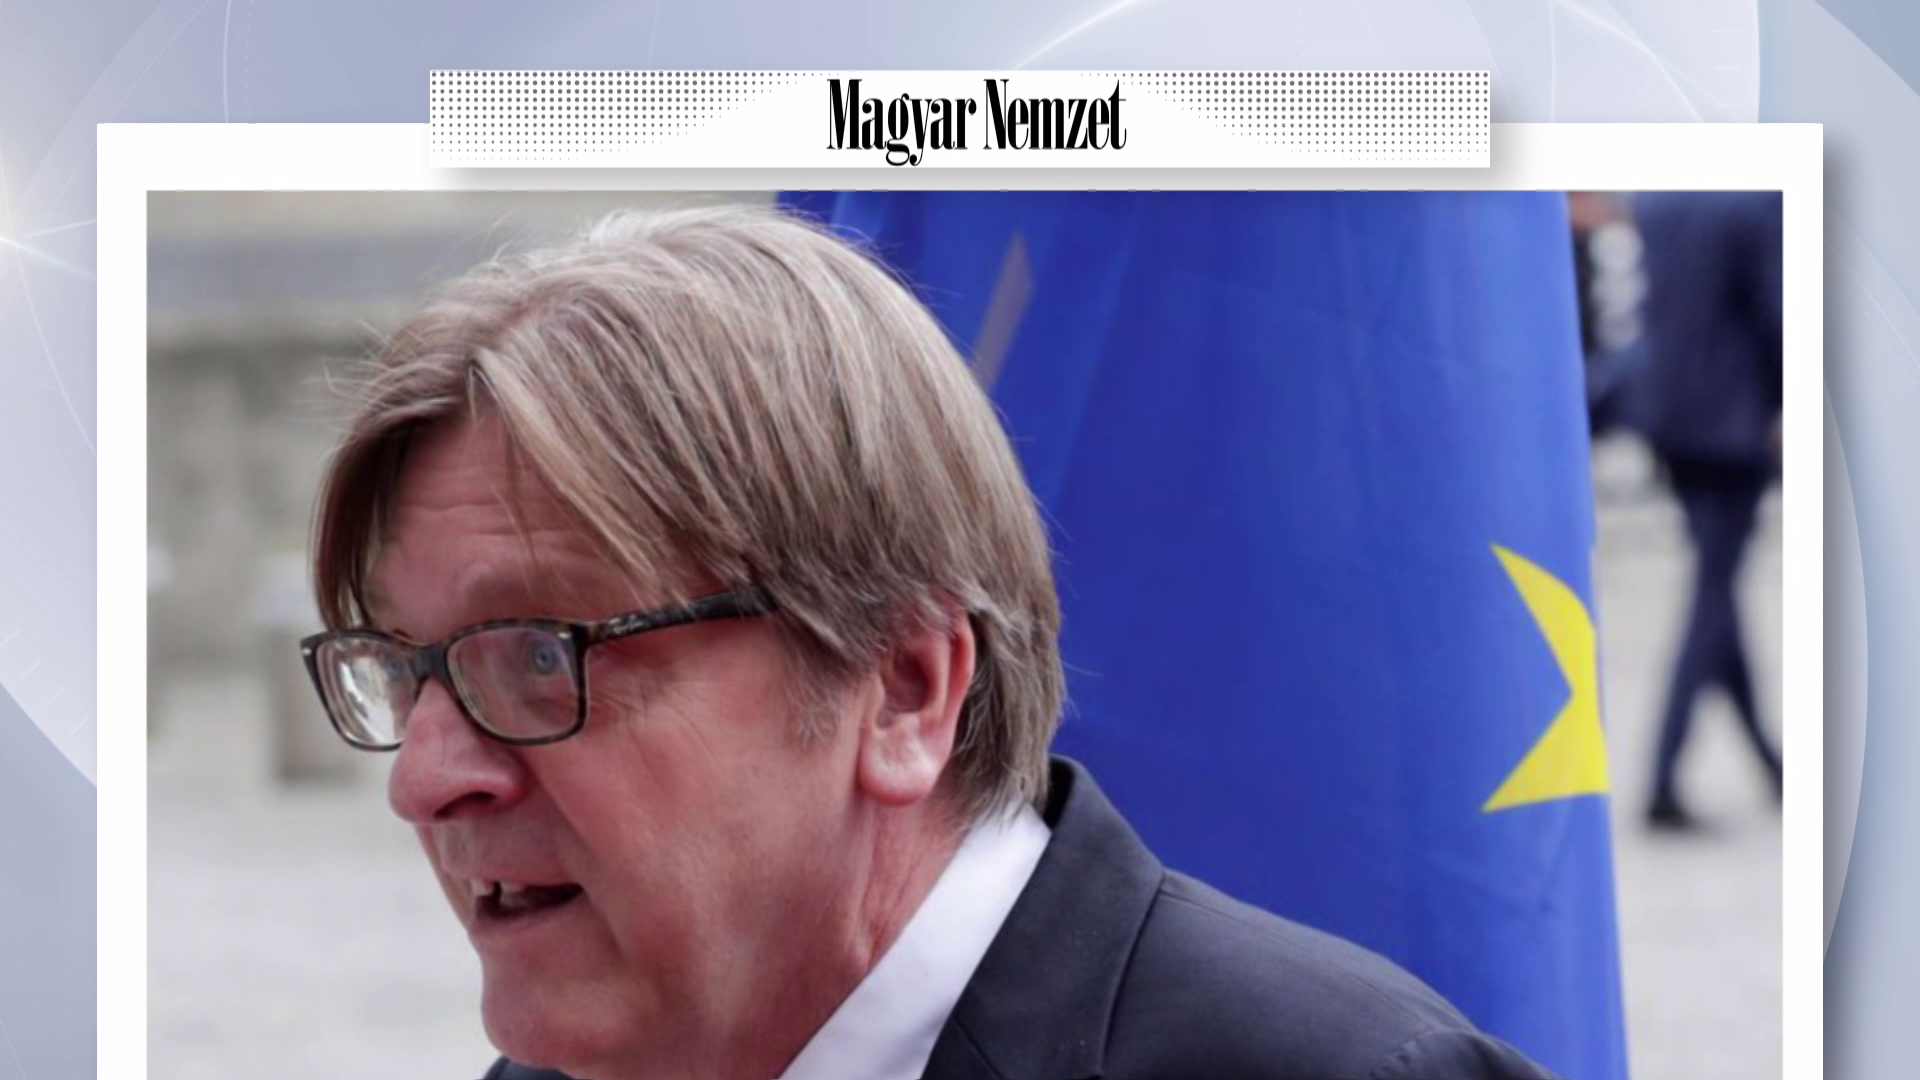 Verhofstadt az adófizetőkkel fizettette ki luxusvillája felújítását 